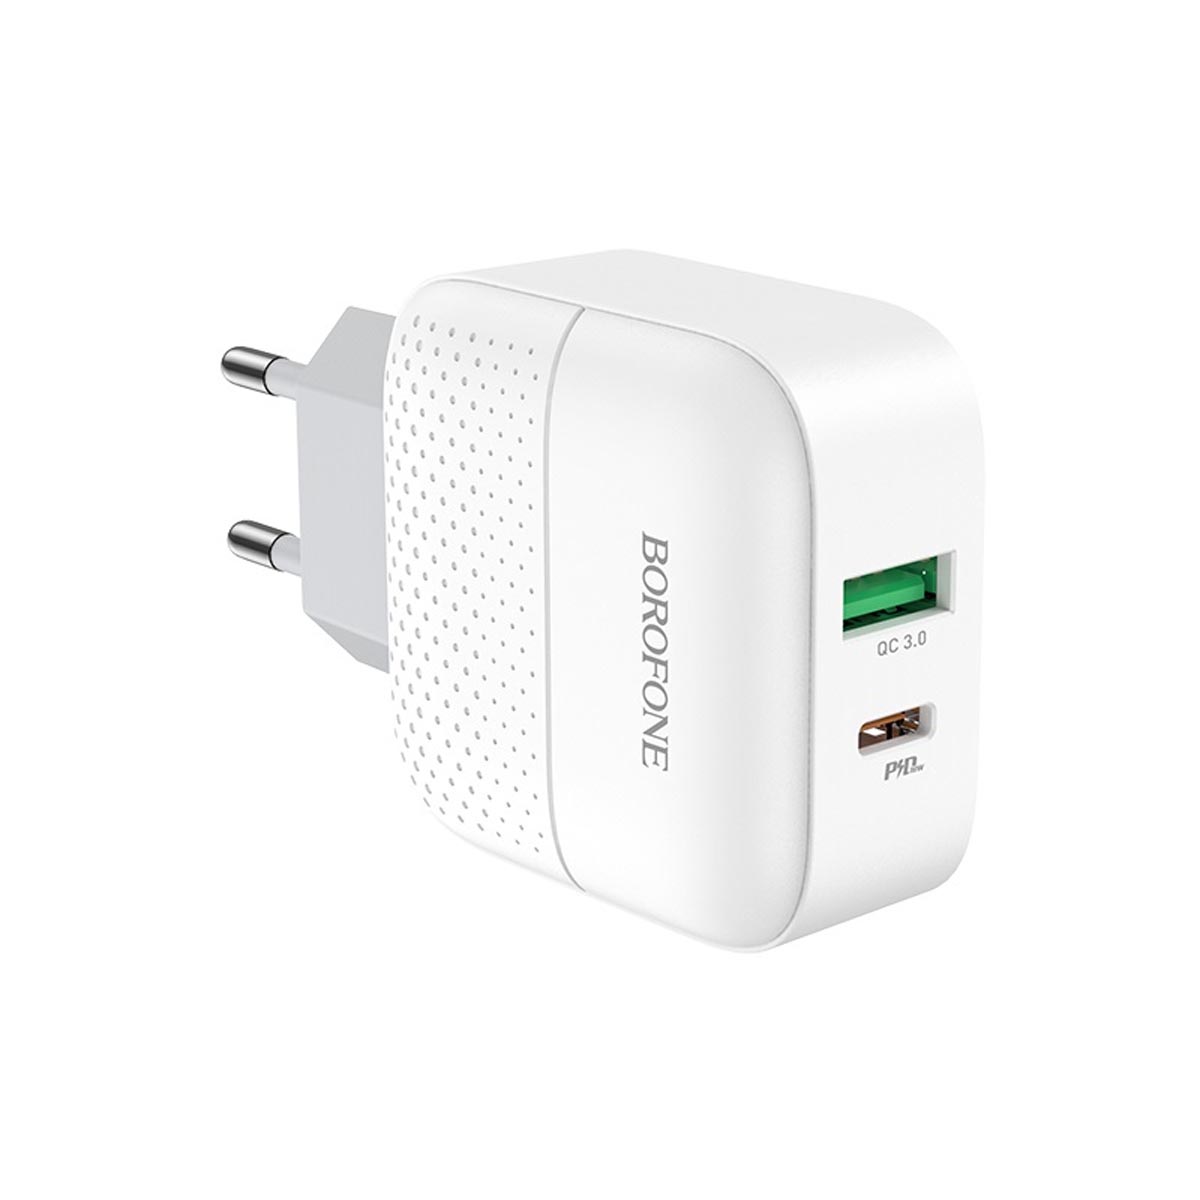 СЗУ (Сетевое зарядное устройство) BOROFONE BA46A Premium, 1 USB, 1 USB Type C, 18W, 3.0A, цвет белый